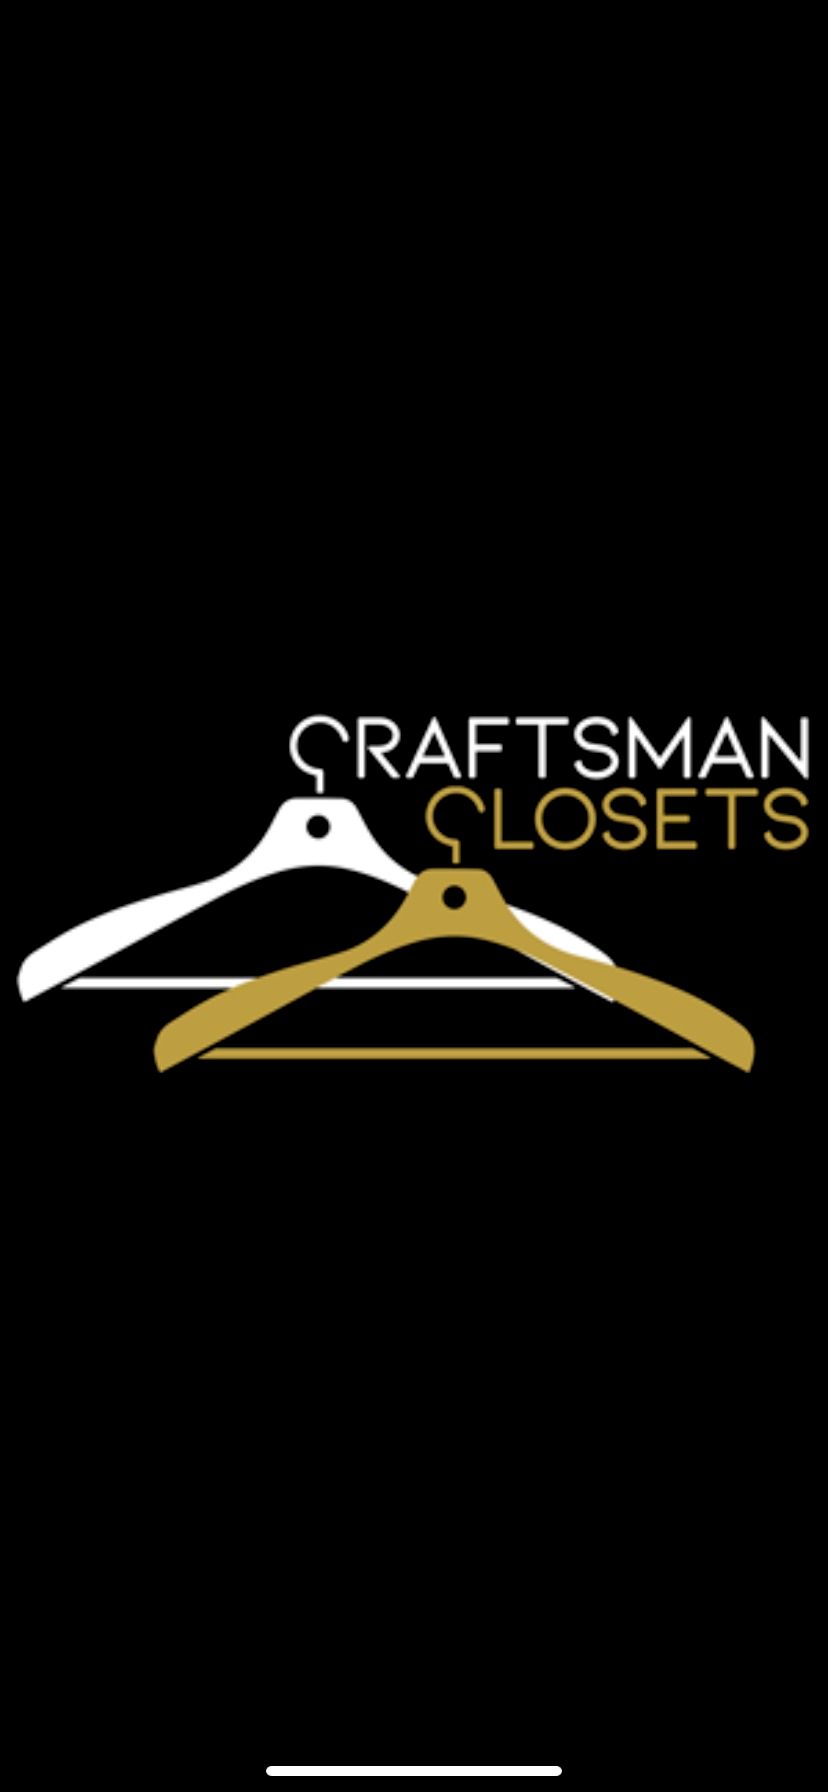 Craftsman Closets